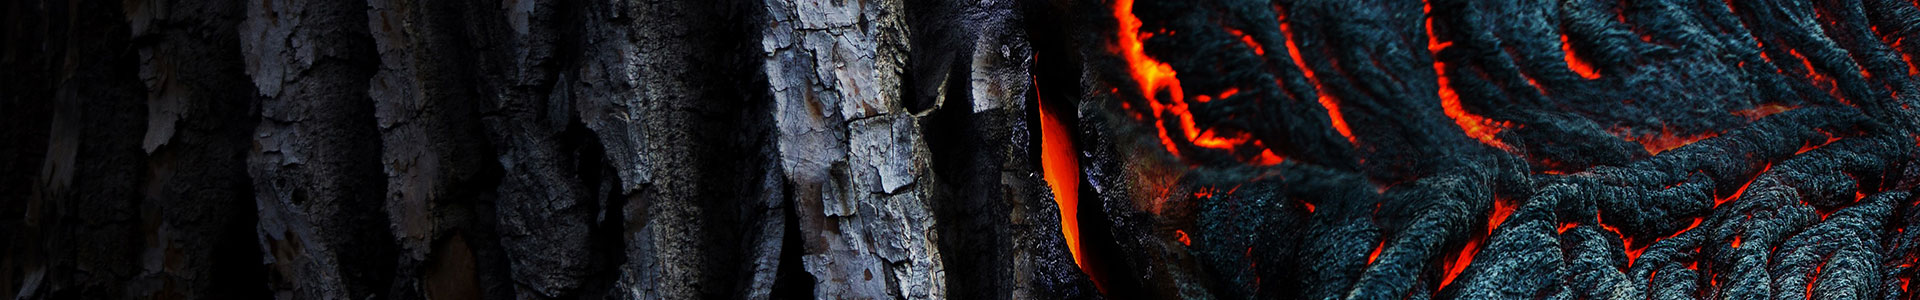 bois brulé et bois en flamme de l'intérieur-combustion-co-monoxyde de carbone